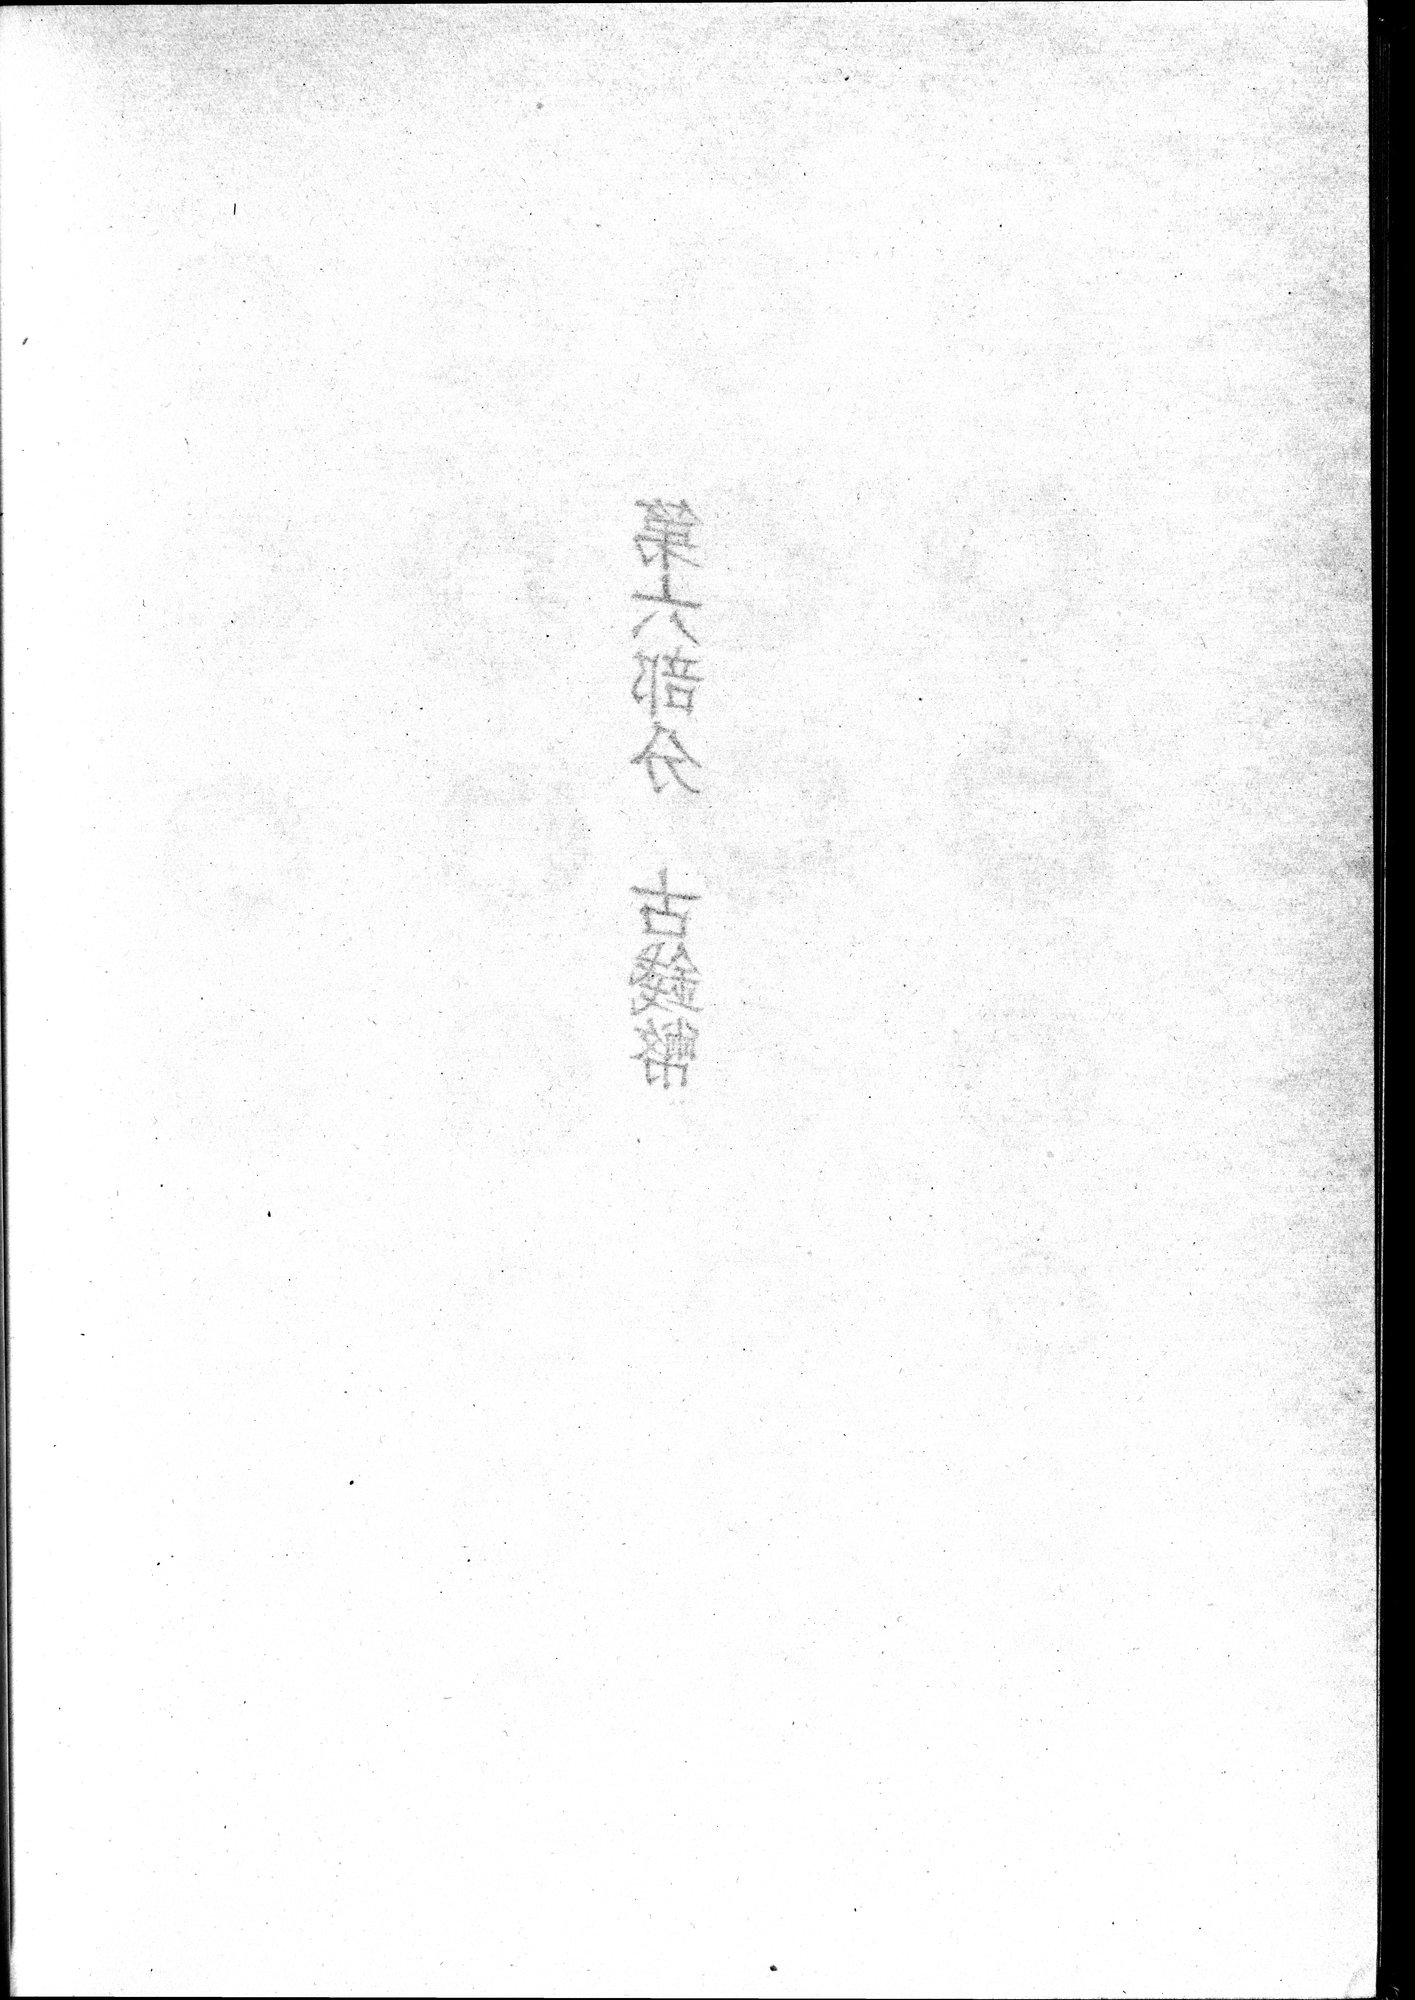 塔里木盆地考古記 : vol.1 / Page 338 (Grayscale High Resolution Image)